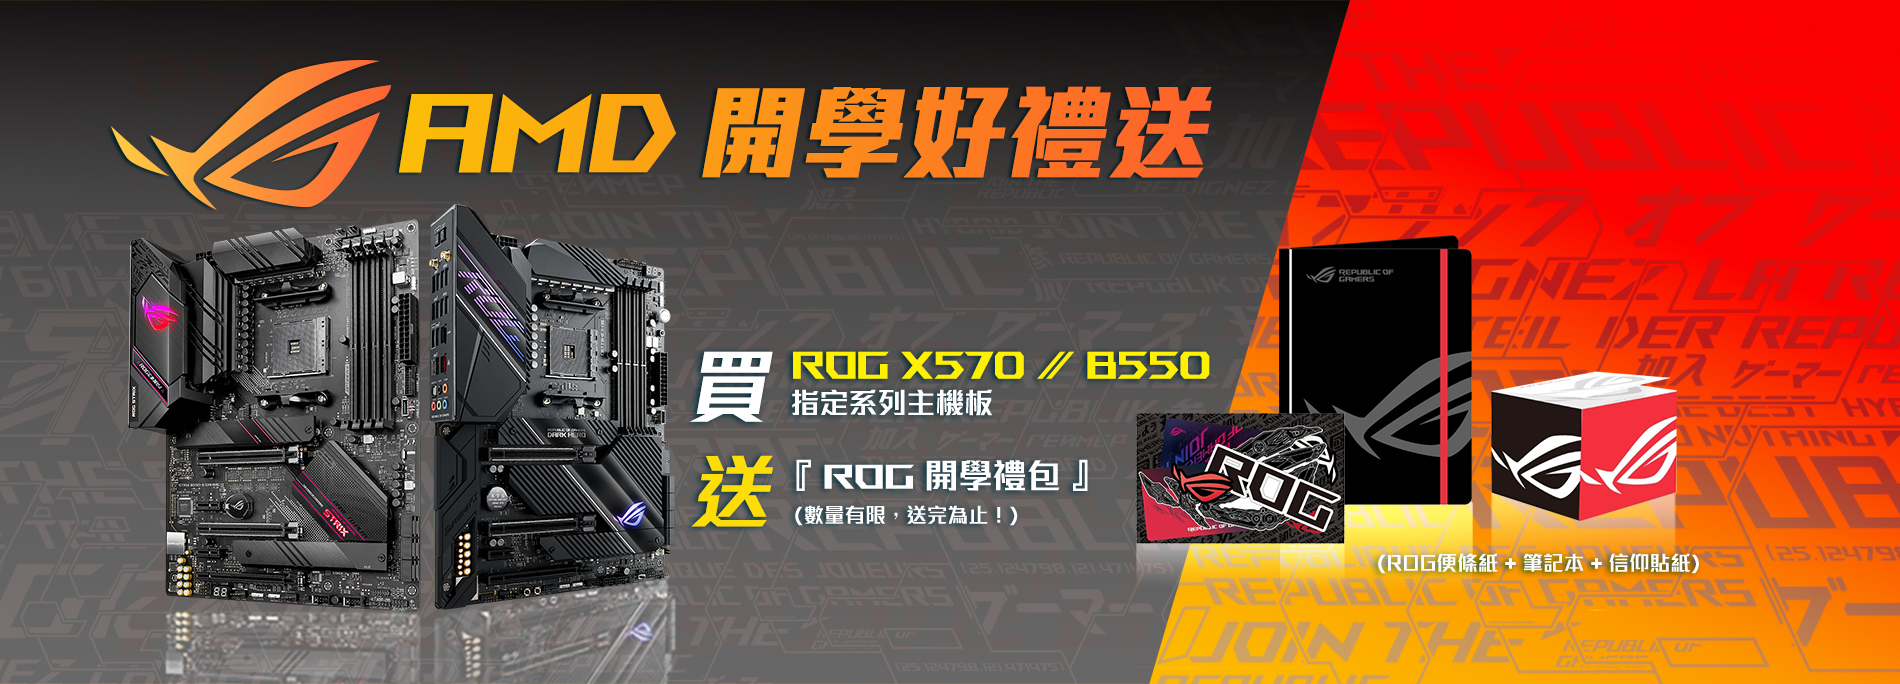 買ROG & ROG Strix X570 / B550 系列主機板，送『ROG 開學禮包』! (數量有限，送完為止！)